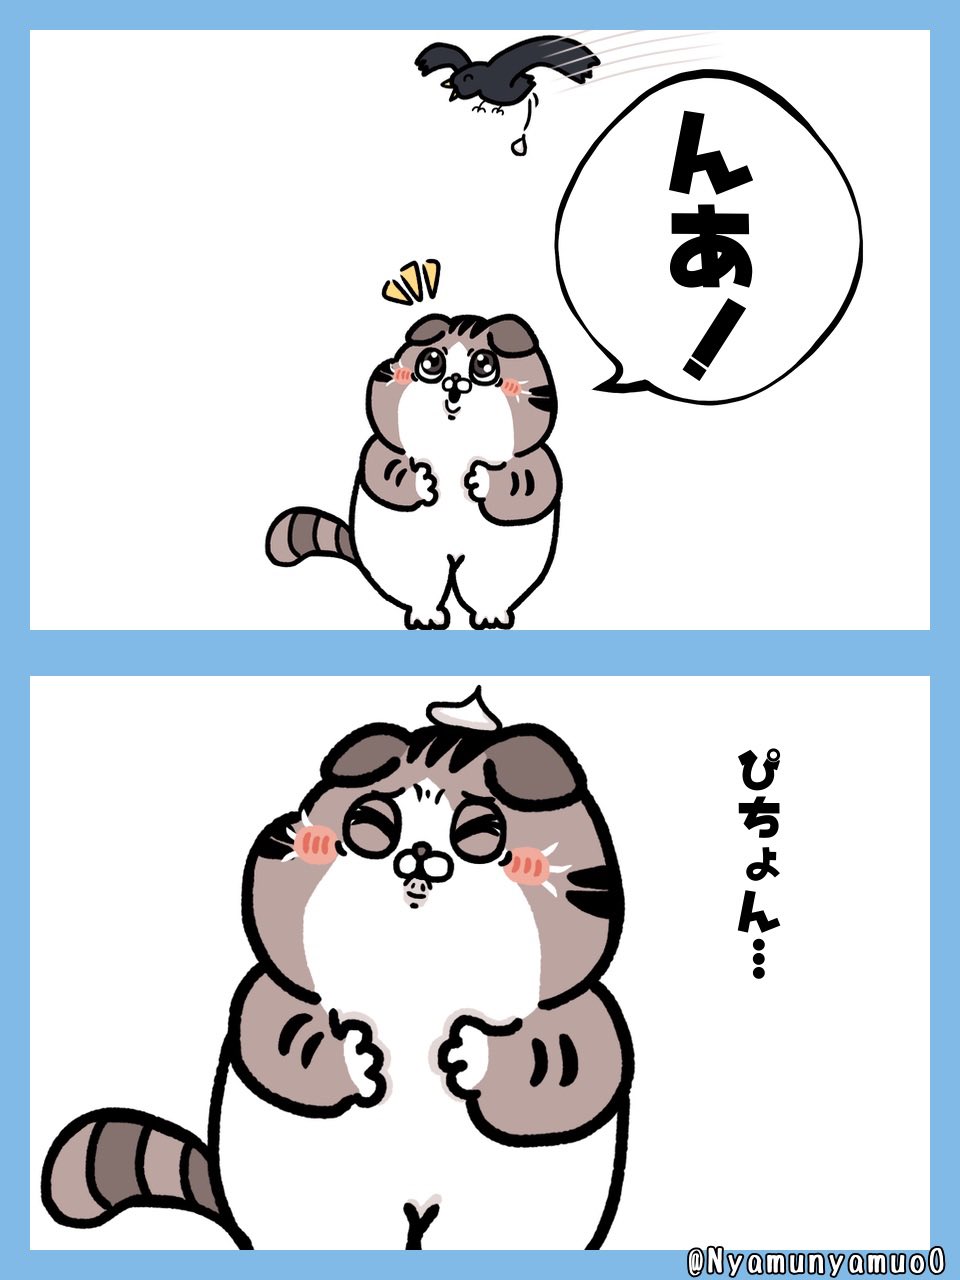 Kurusu 頭上注意 猫 イラスト ゆるいイラスト ほのぼのイラスト ゆるかわ みんなで楽しむtwitter展覧会 アトリエの系譜s イラスト好きな人と繋がりたい T Co Irc6mgsahd Twitter